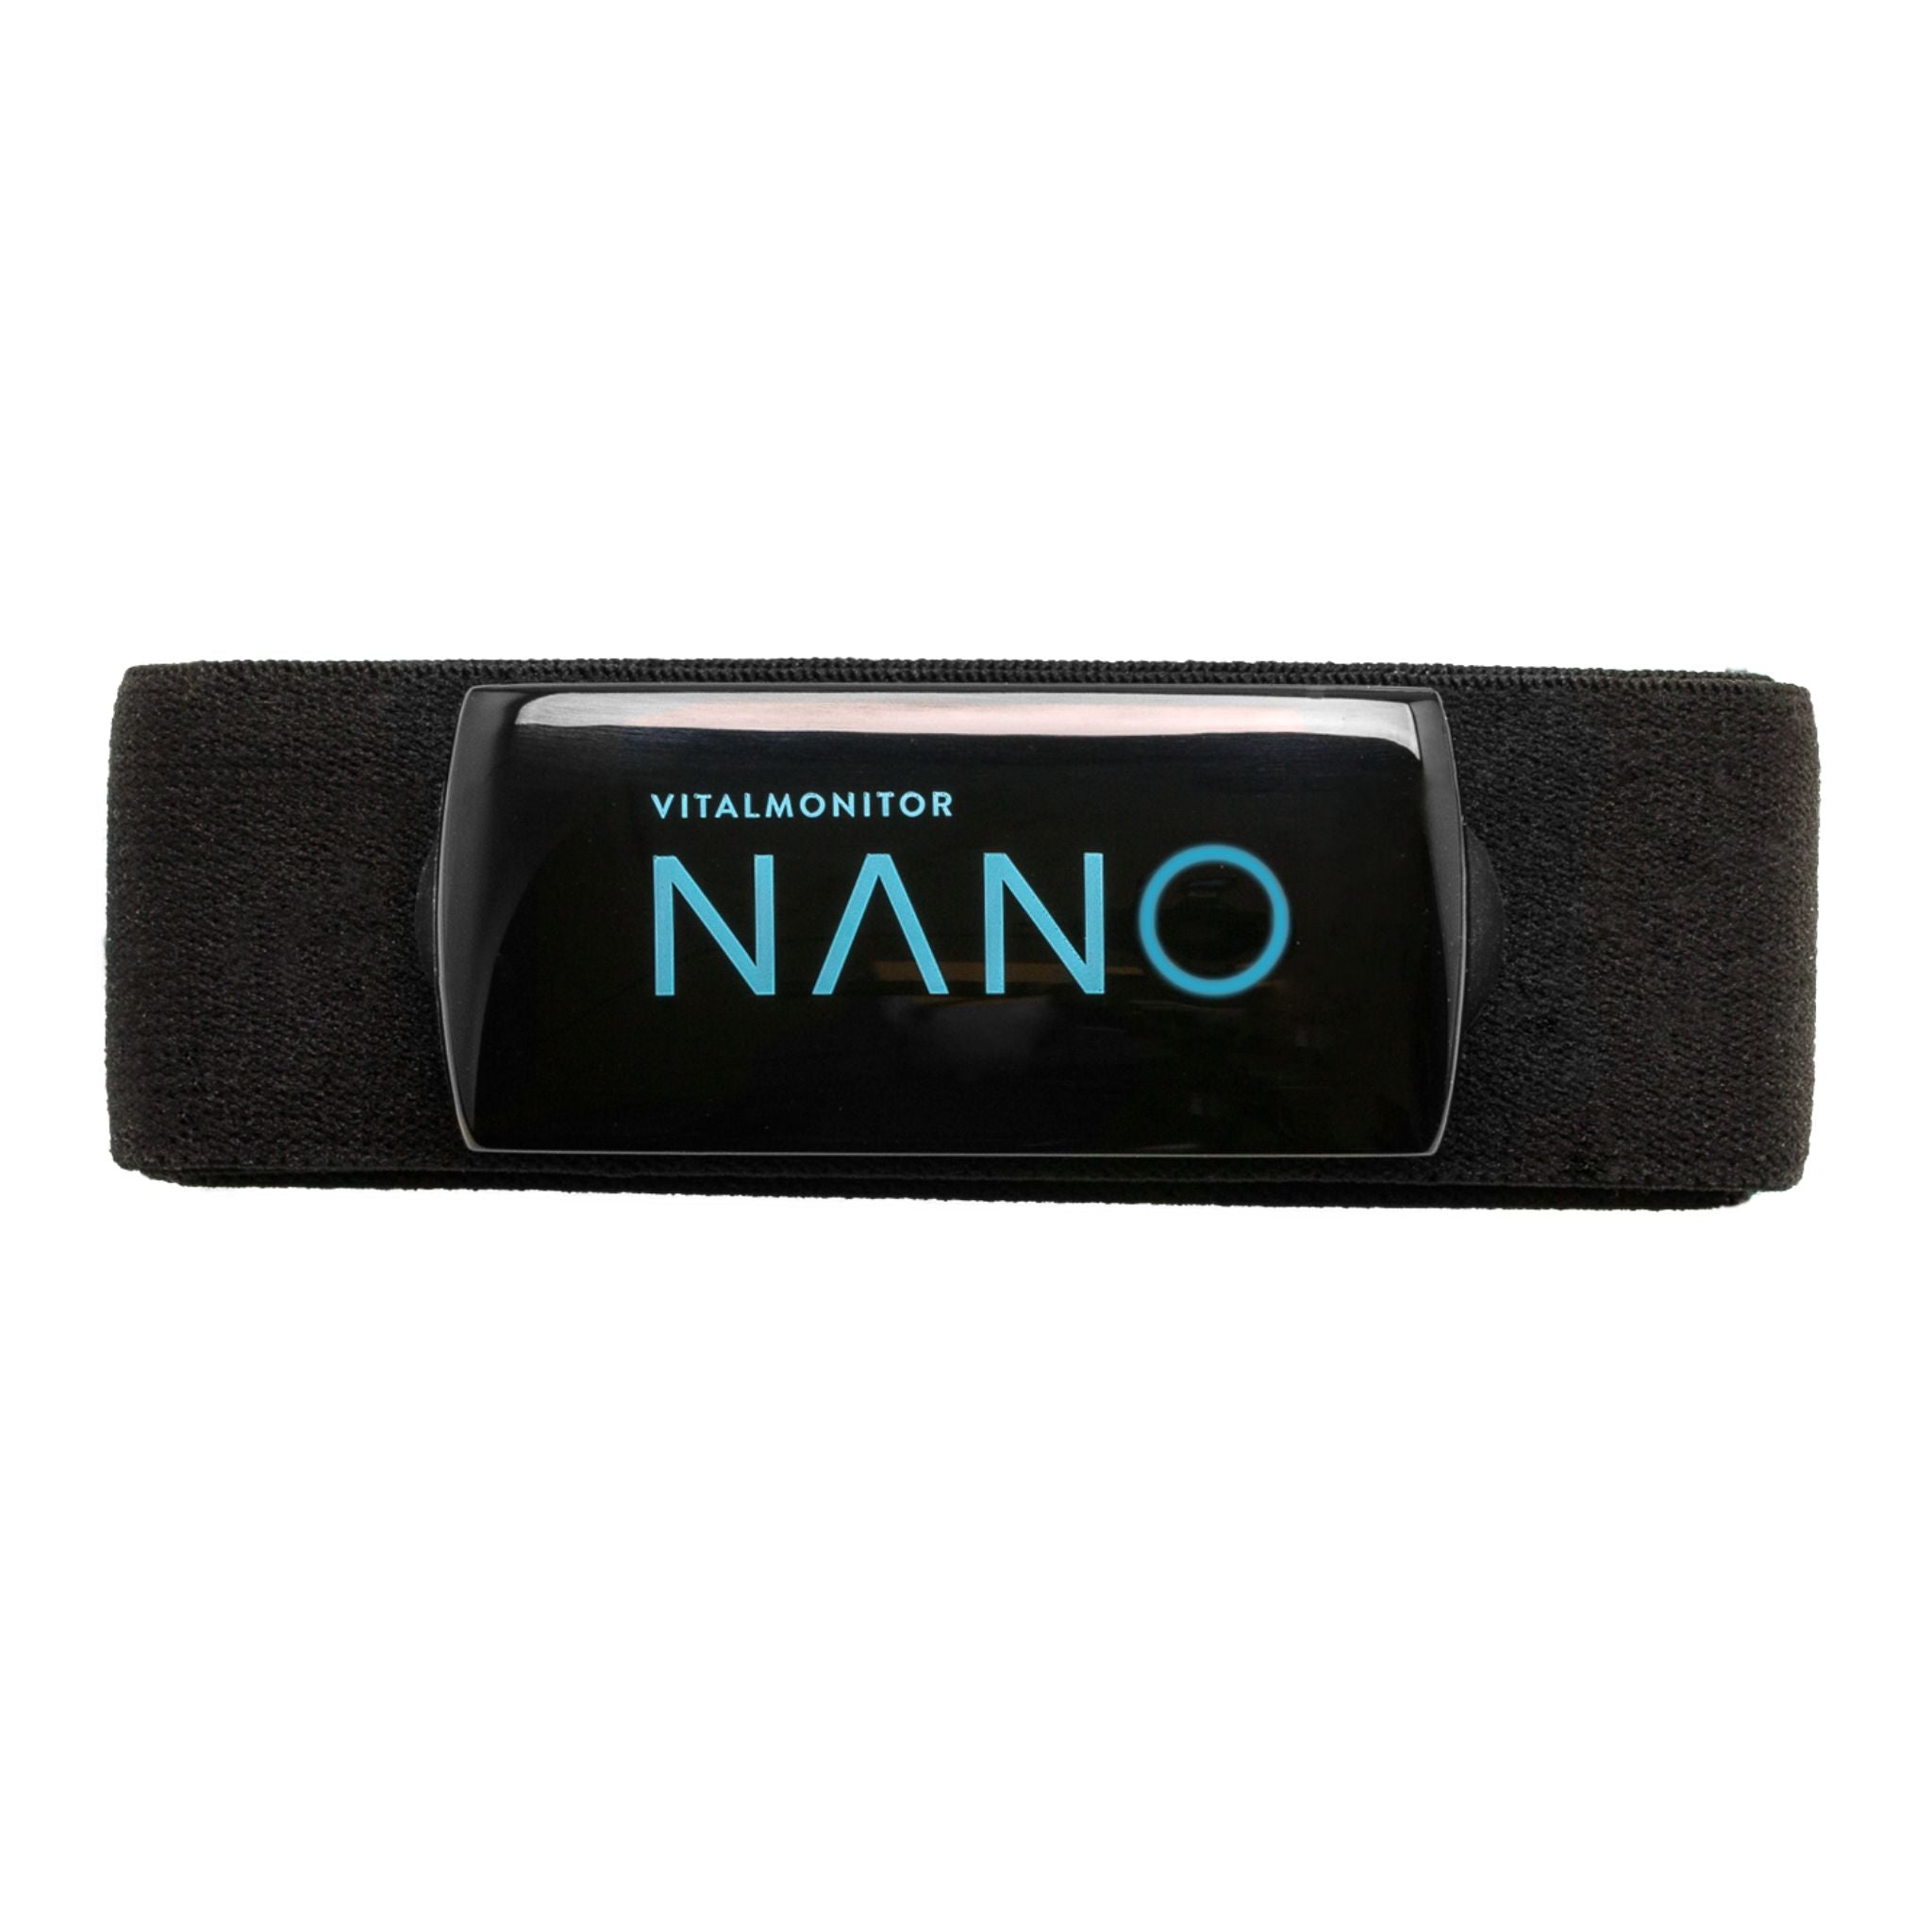 Vitalmonitor Nano